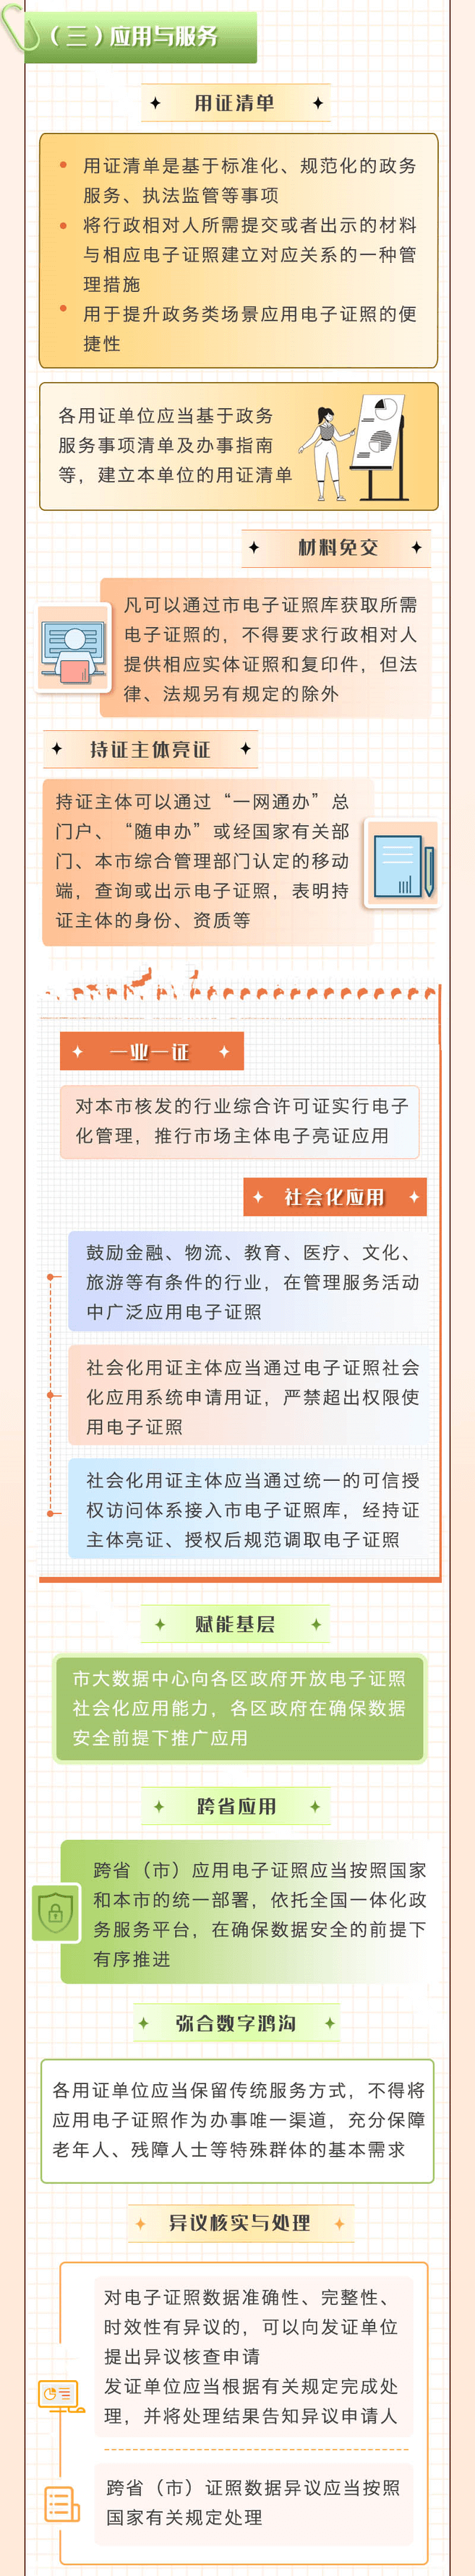 上海市电子证照管理办法,上海居住证积分网